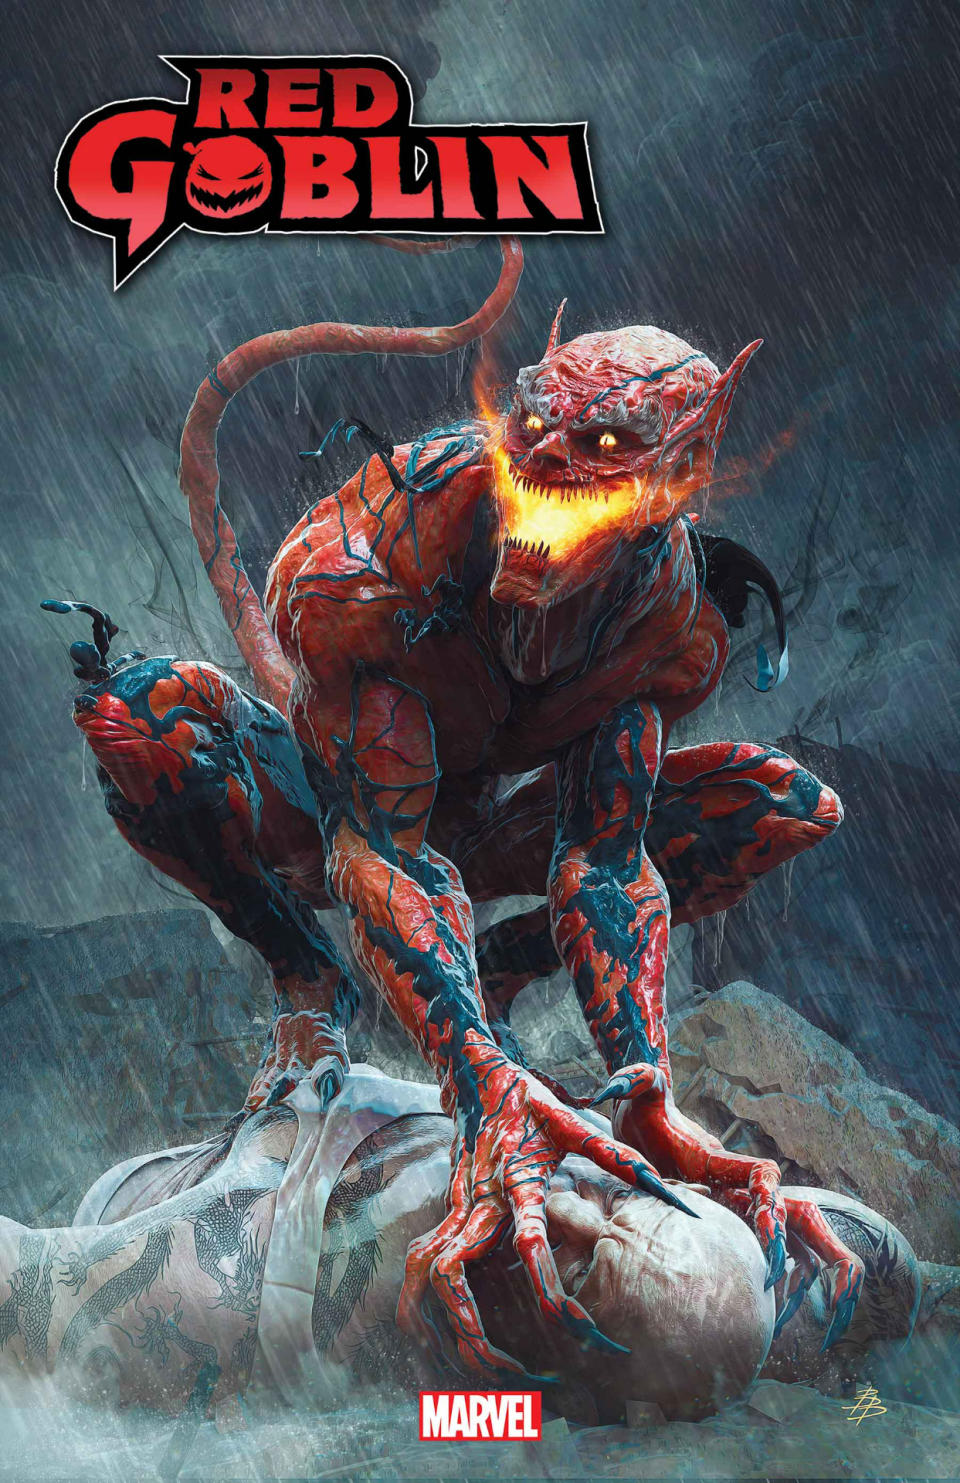 Red Goblin #6 cover art